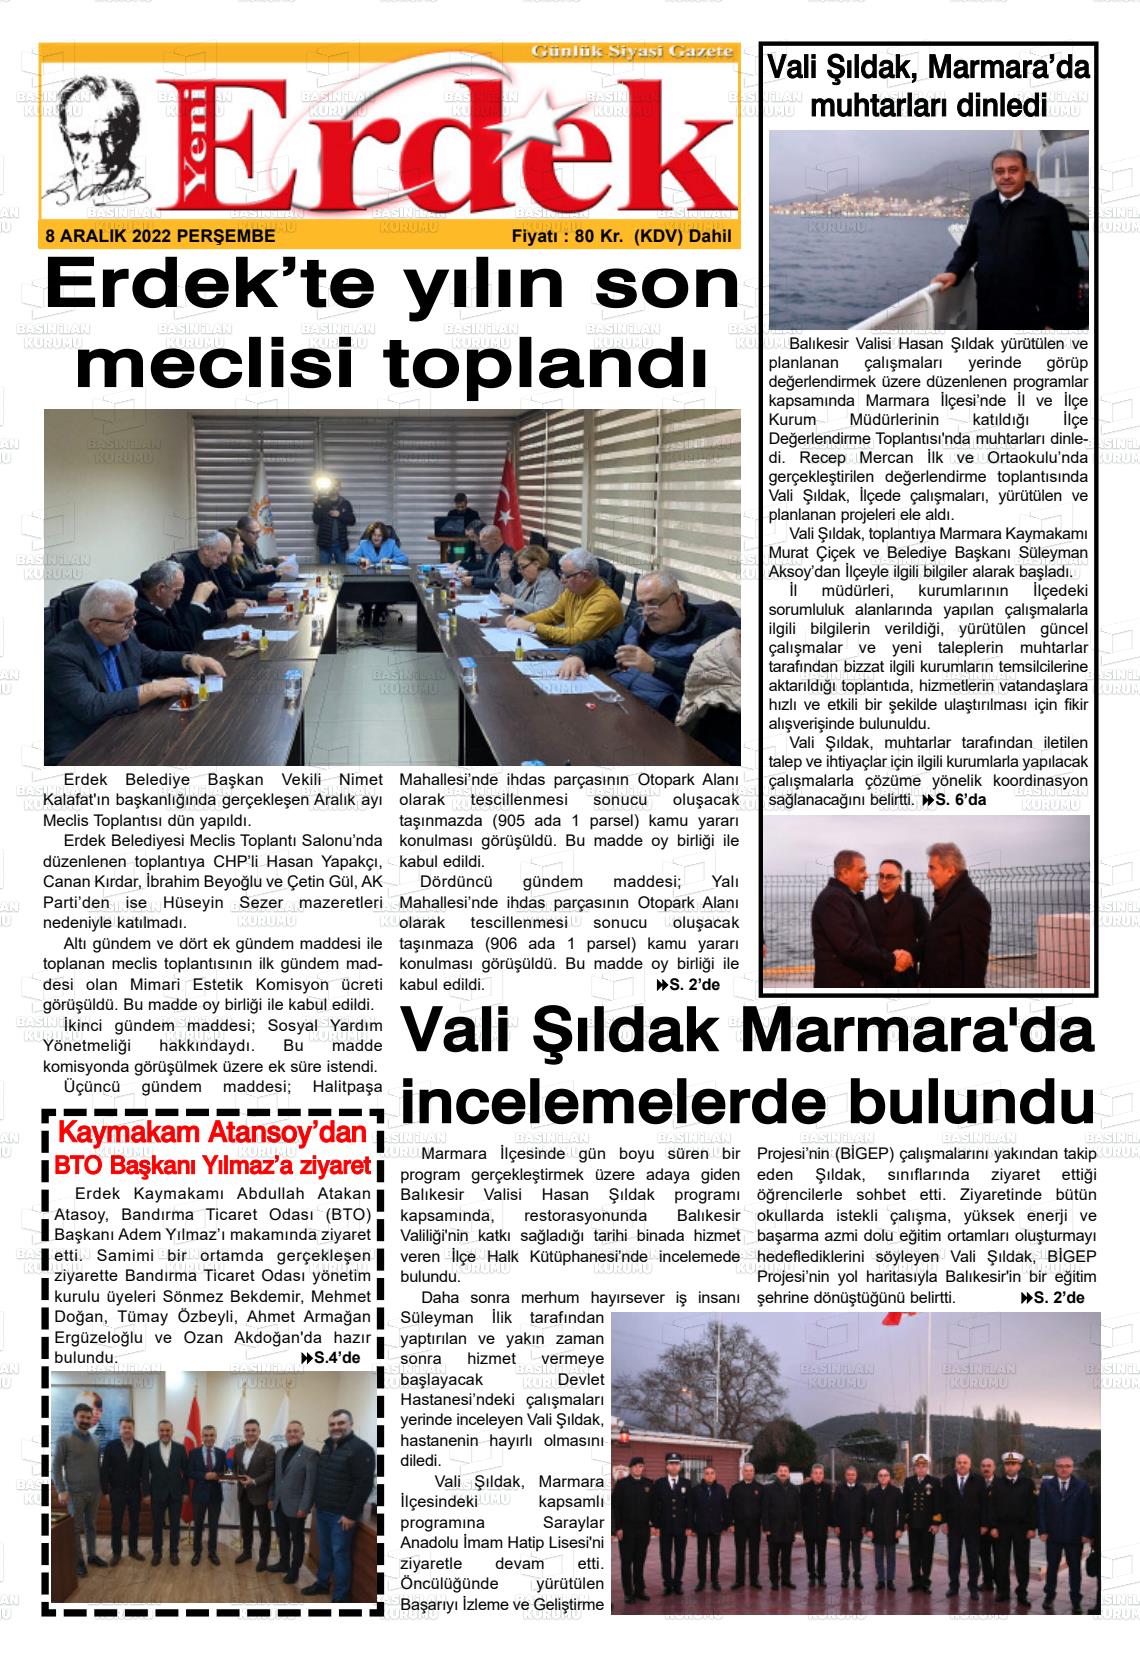 08 Aralık 2022 Yeni Erdek Gazete Manşeti